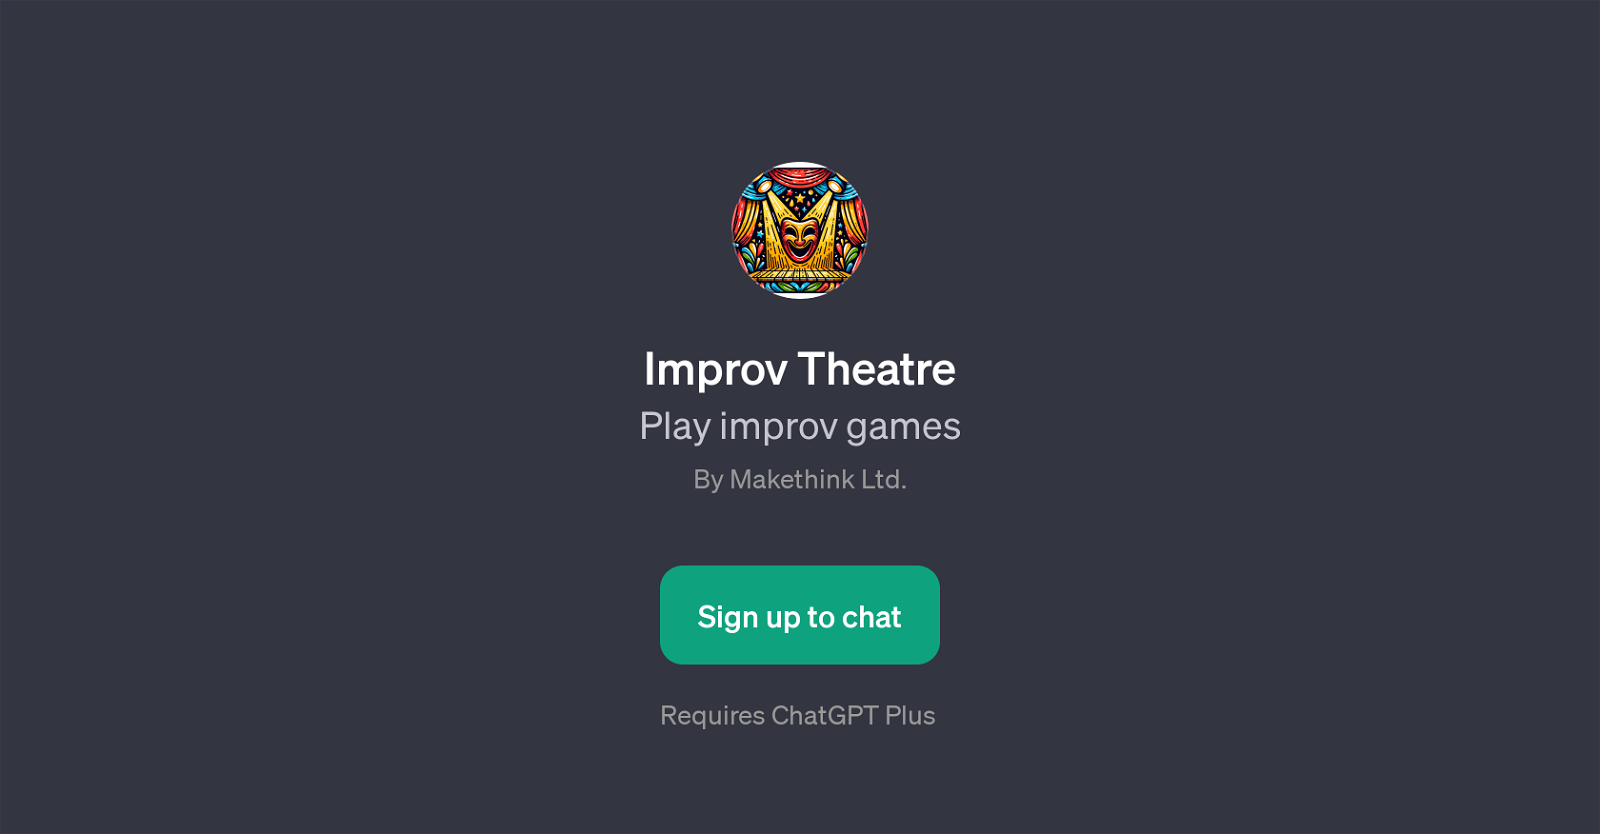 Improv Theatre website